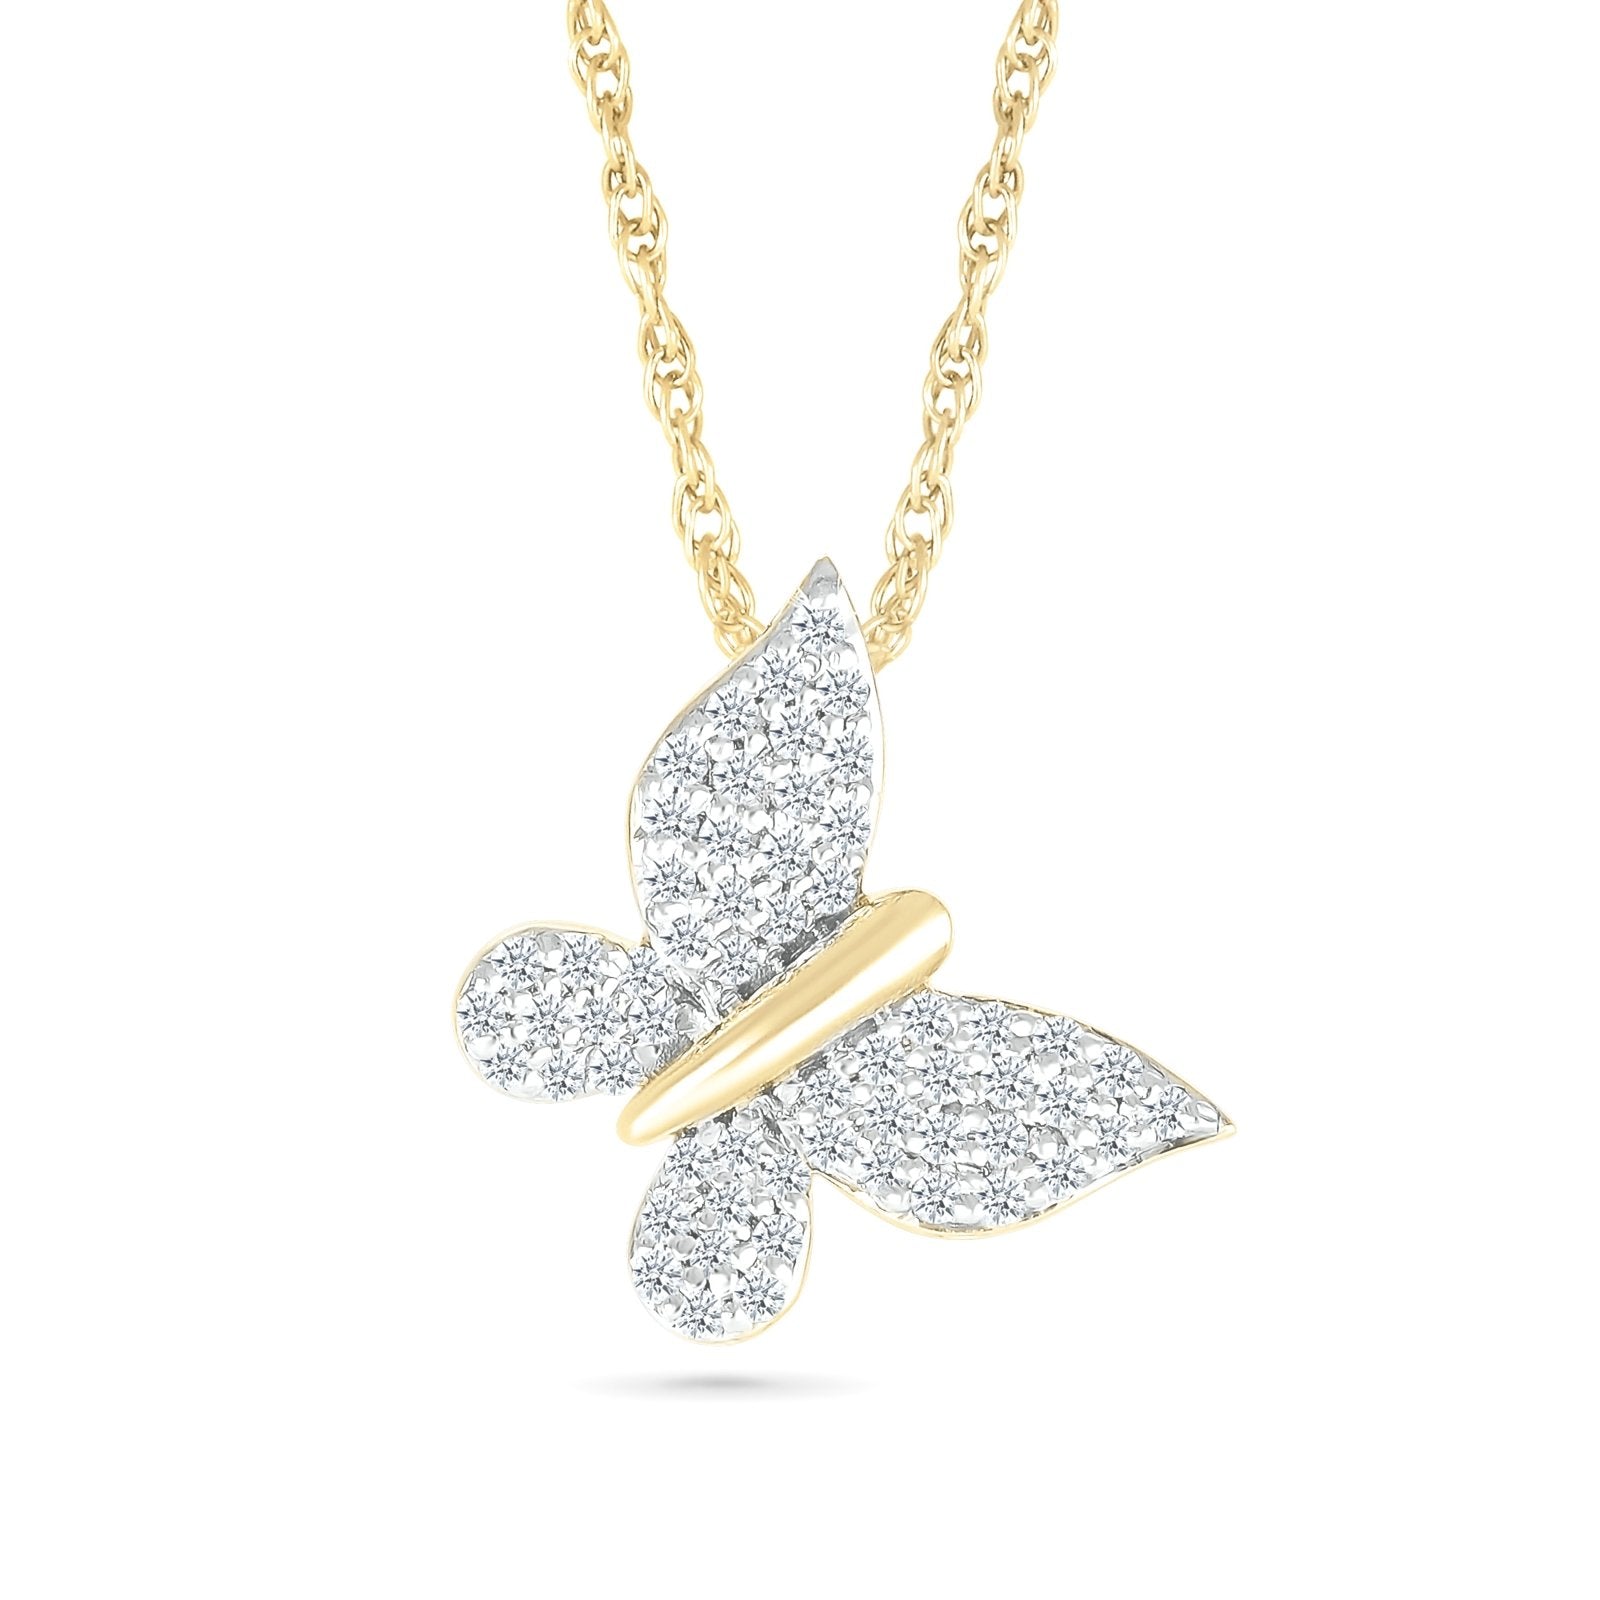 Diamond Pave Butterfly Necklace Necklaces Estella Collection #product_description# 32740 10k April Birthstone Colorless Gemstone #tag4# #tag5# #tag6# #tag7# #tag8# #tag9# #tag10#